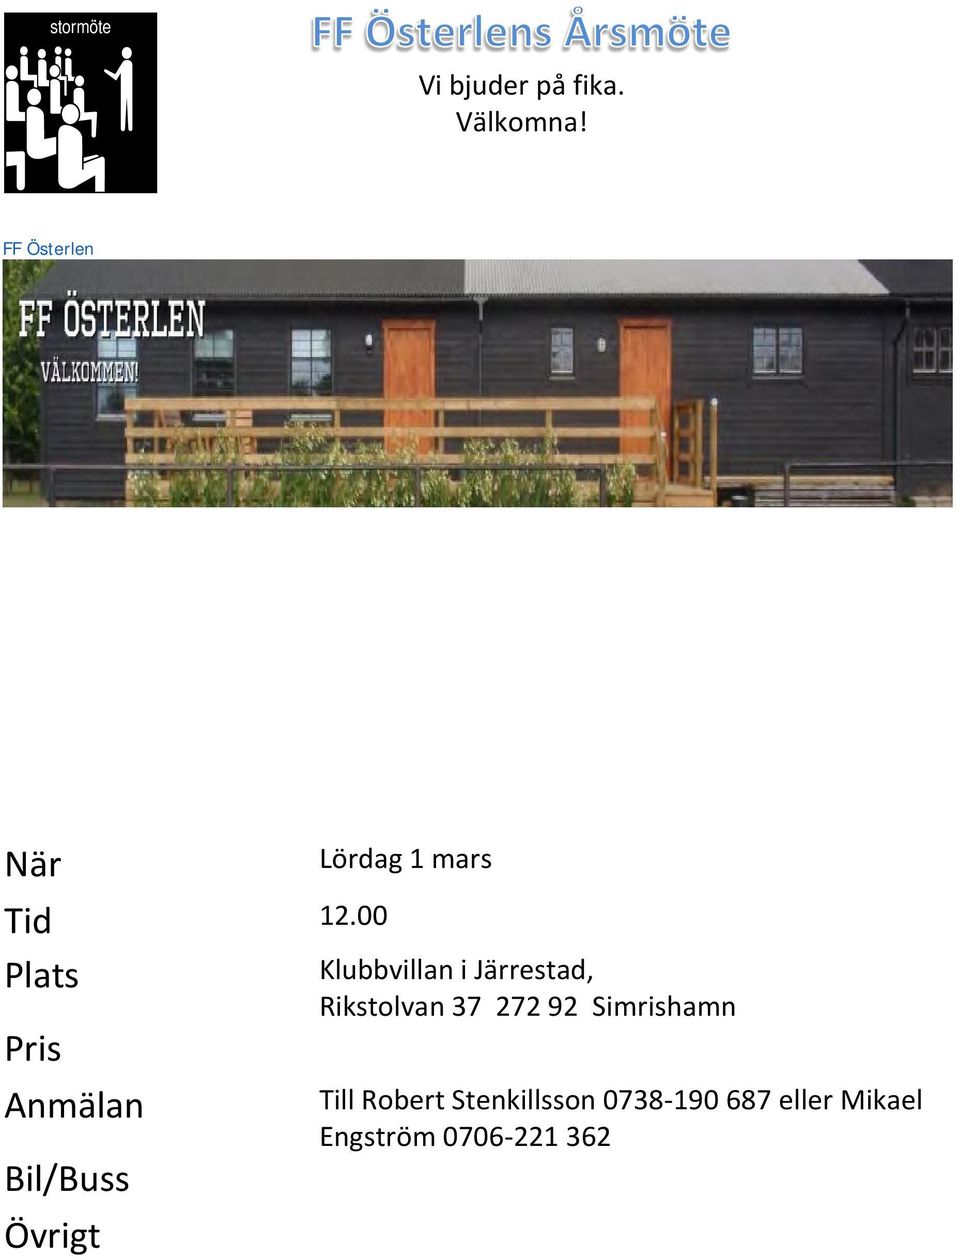 00 Klubbvillan i Järrestad, Rikstolvan 37 272 92